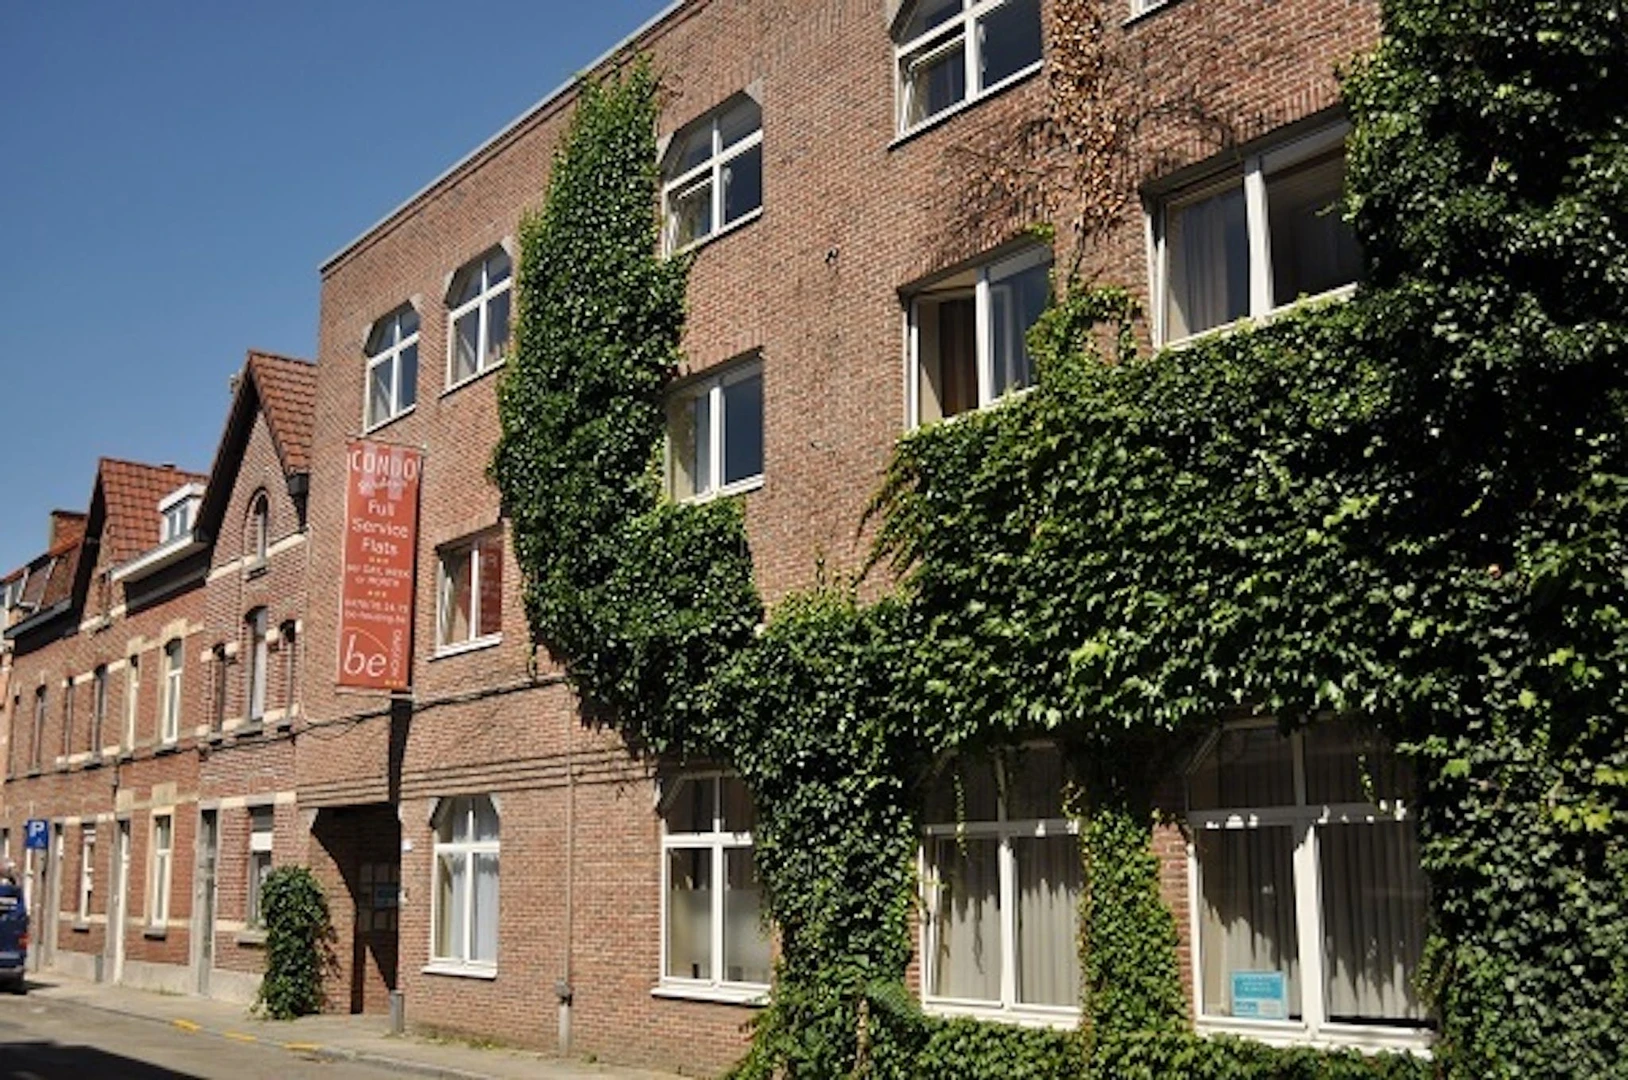 Logement situé dans le centre de Louvain